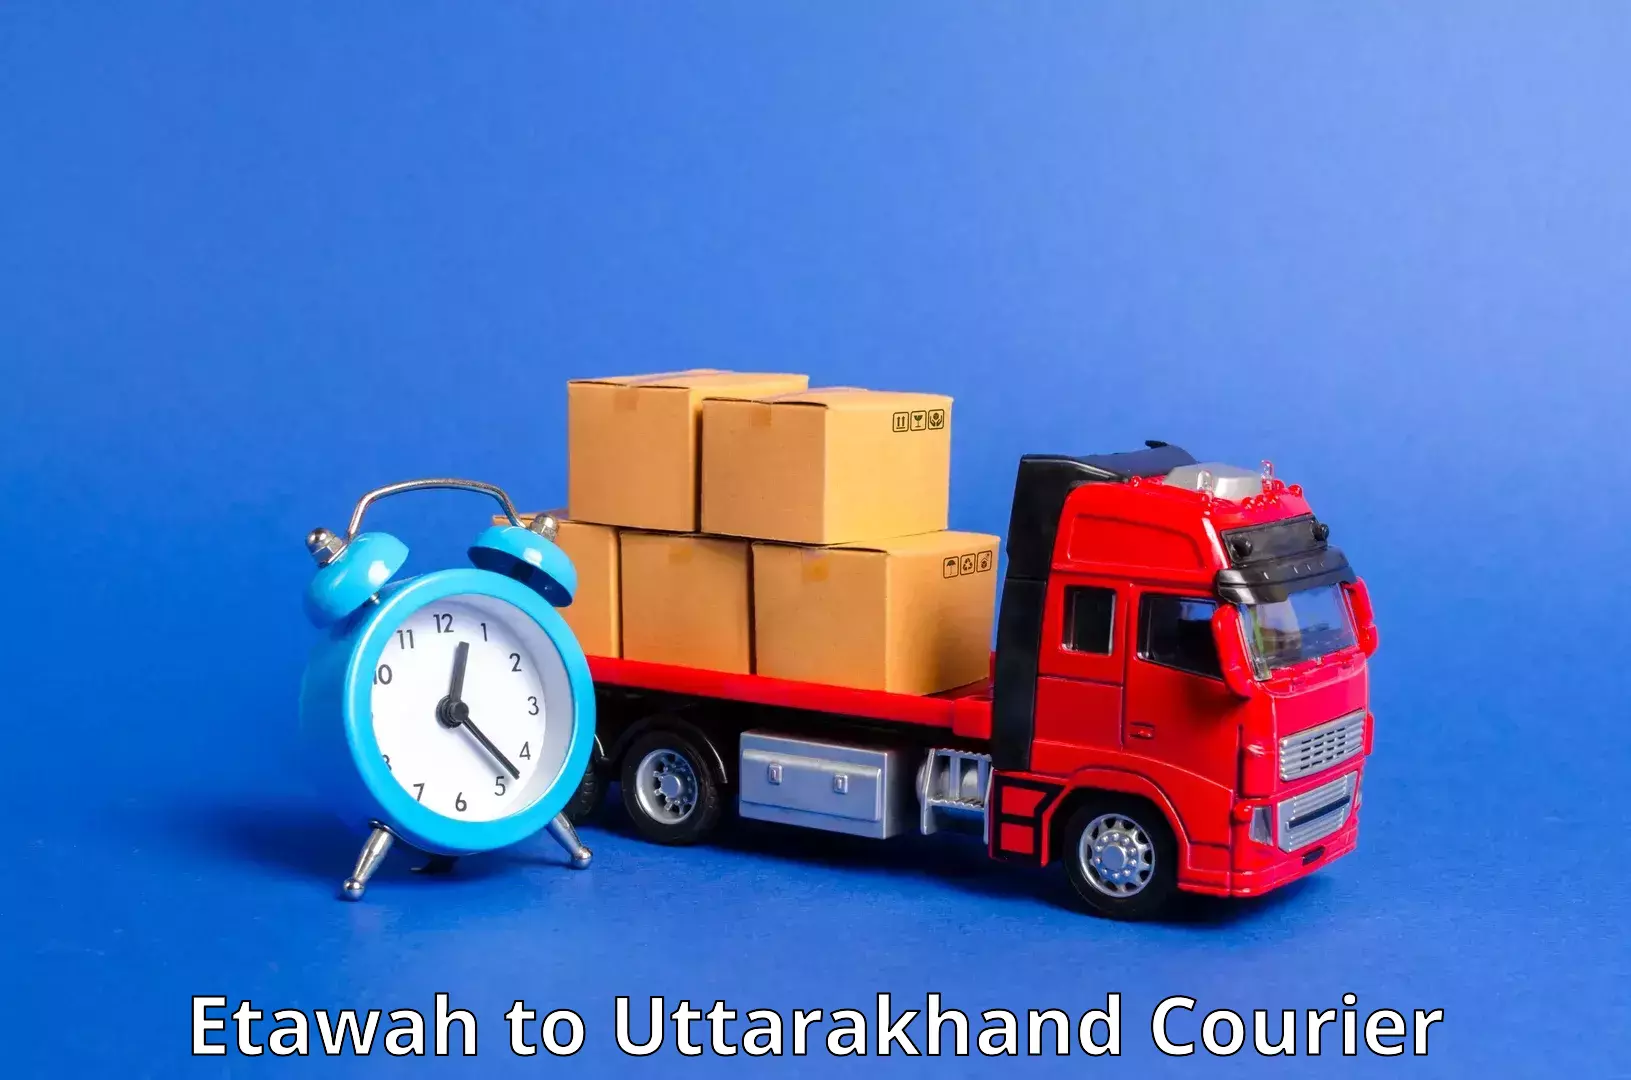 Urgent courier needs Etawah to Paithani